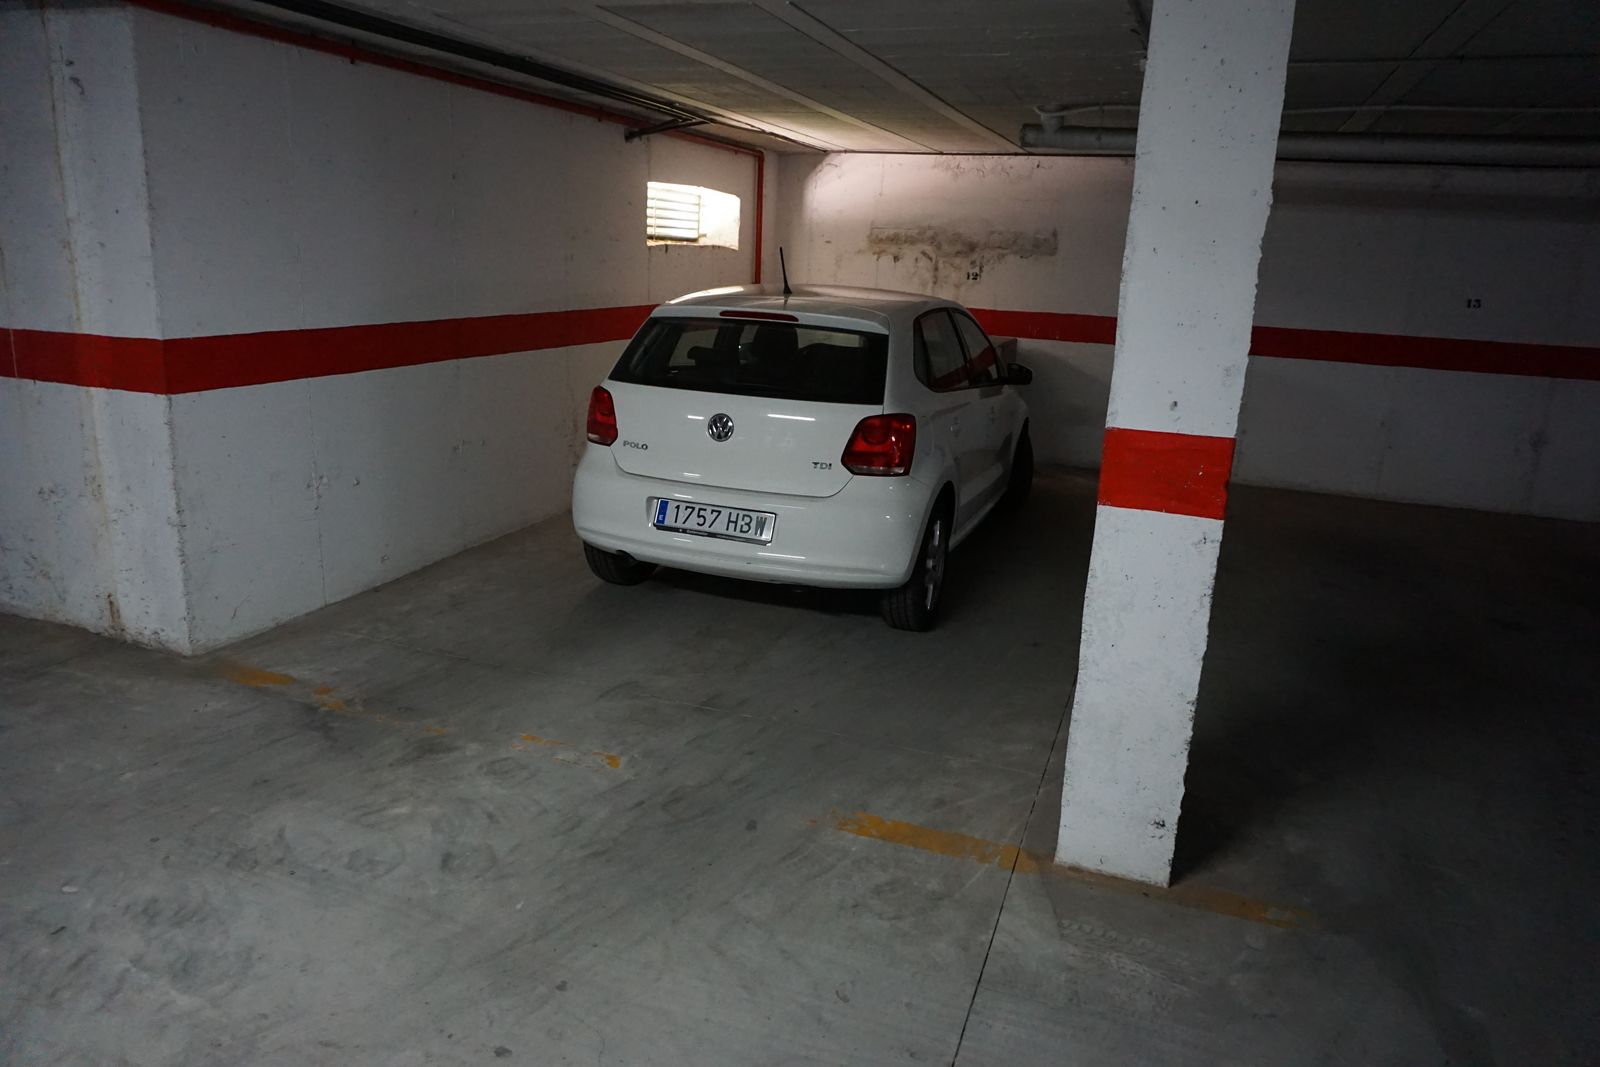 Secure underground parking